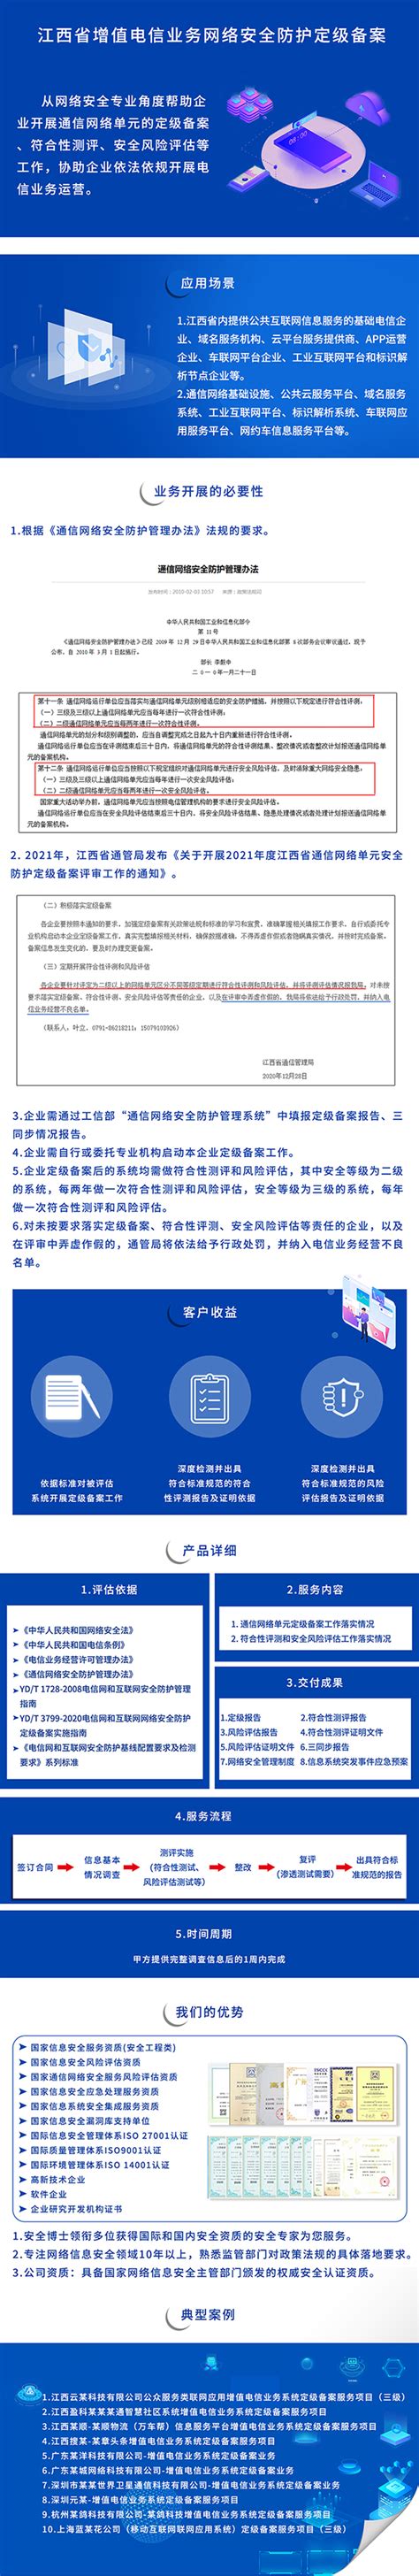 江西省增值电信业务网络安全防护定级备案